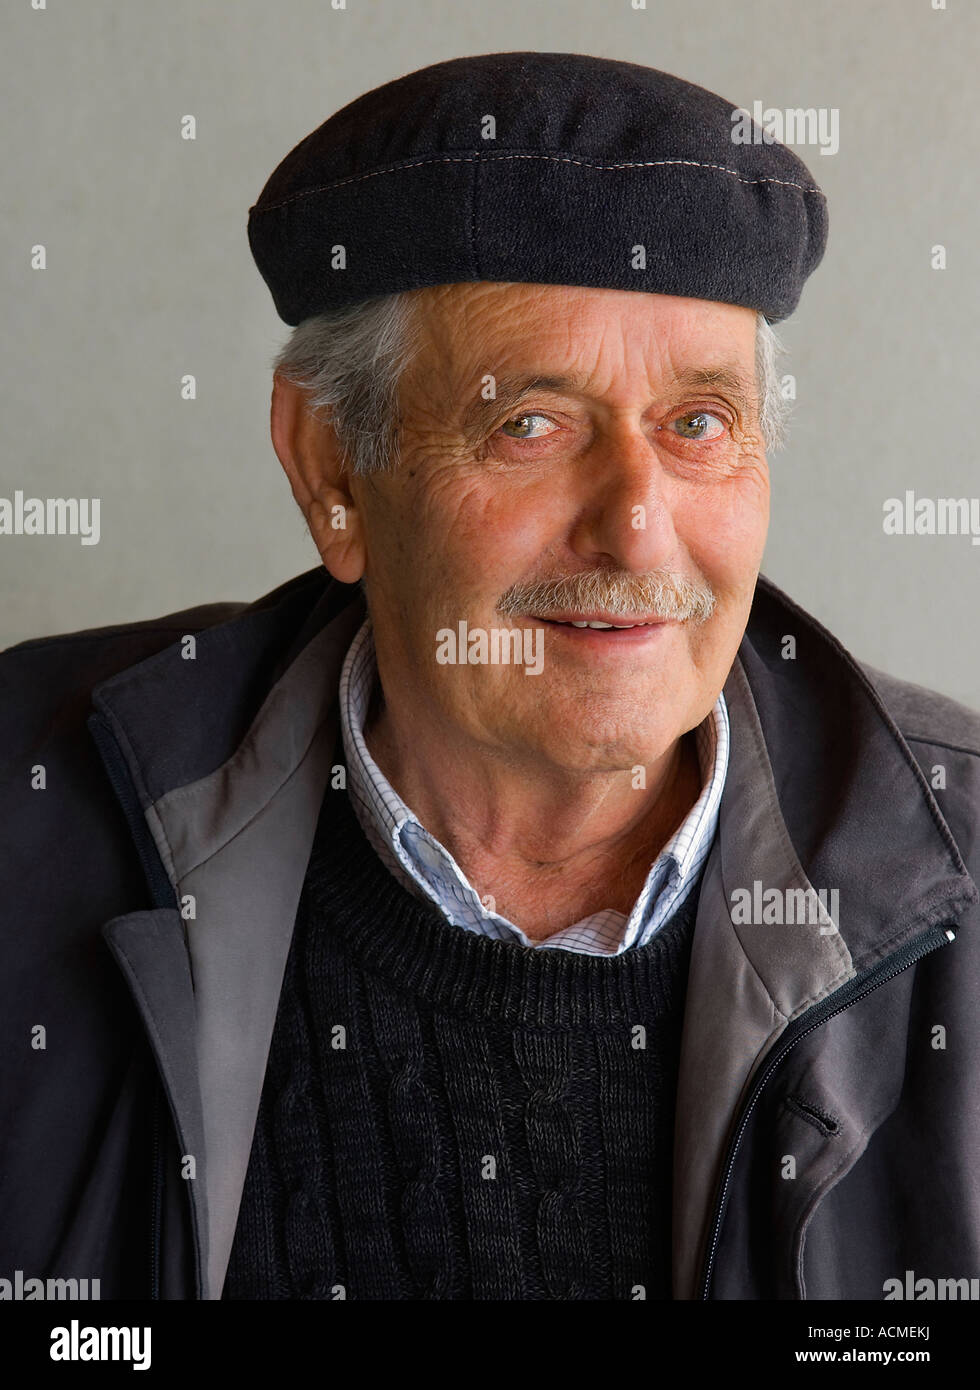 Portrait d'un vieux smiling man wearing a black cap Banque D'Images